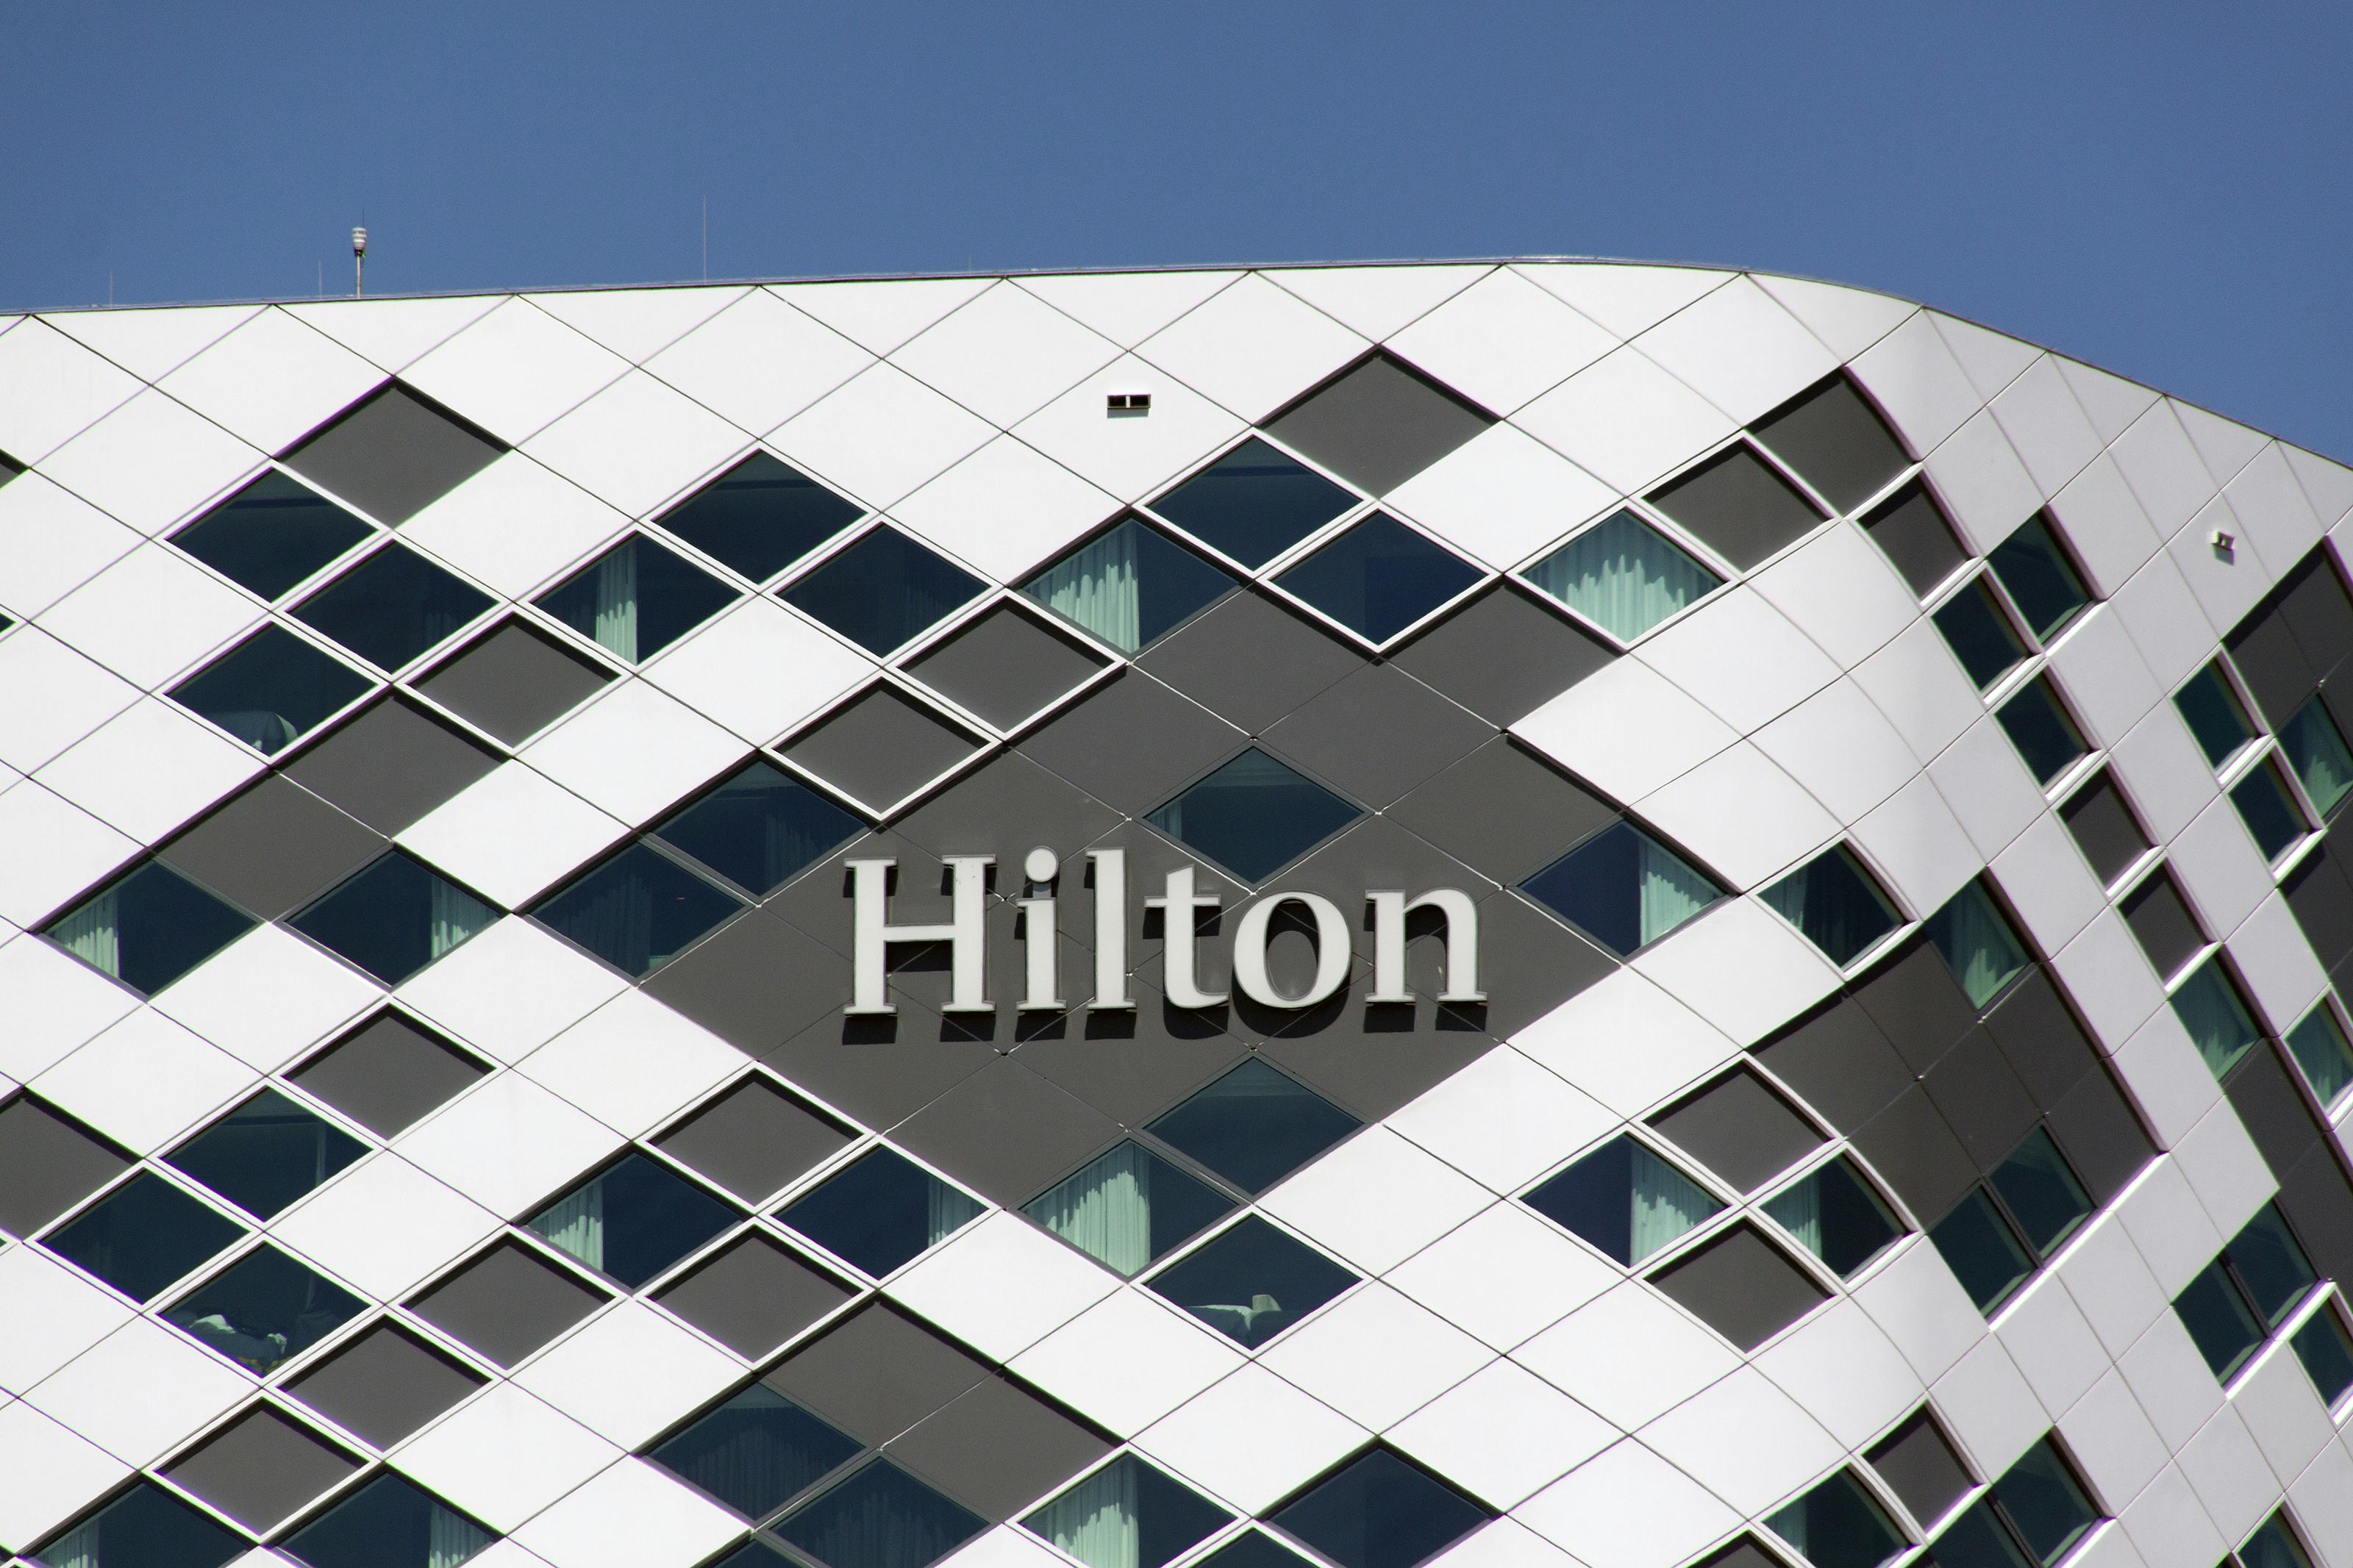 Hilton schrapt wereldwijd 2100 kantoorbanen vanwege crisis